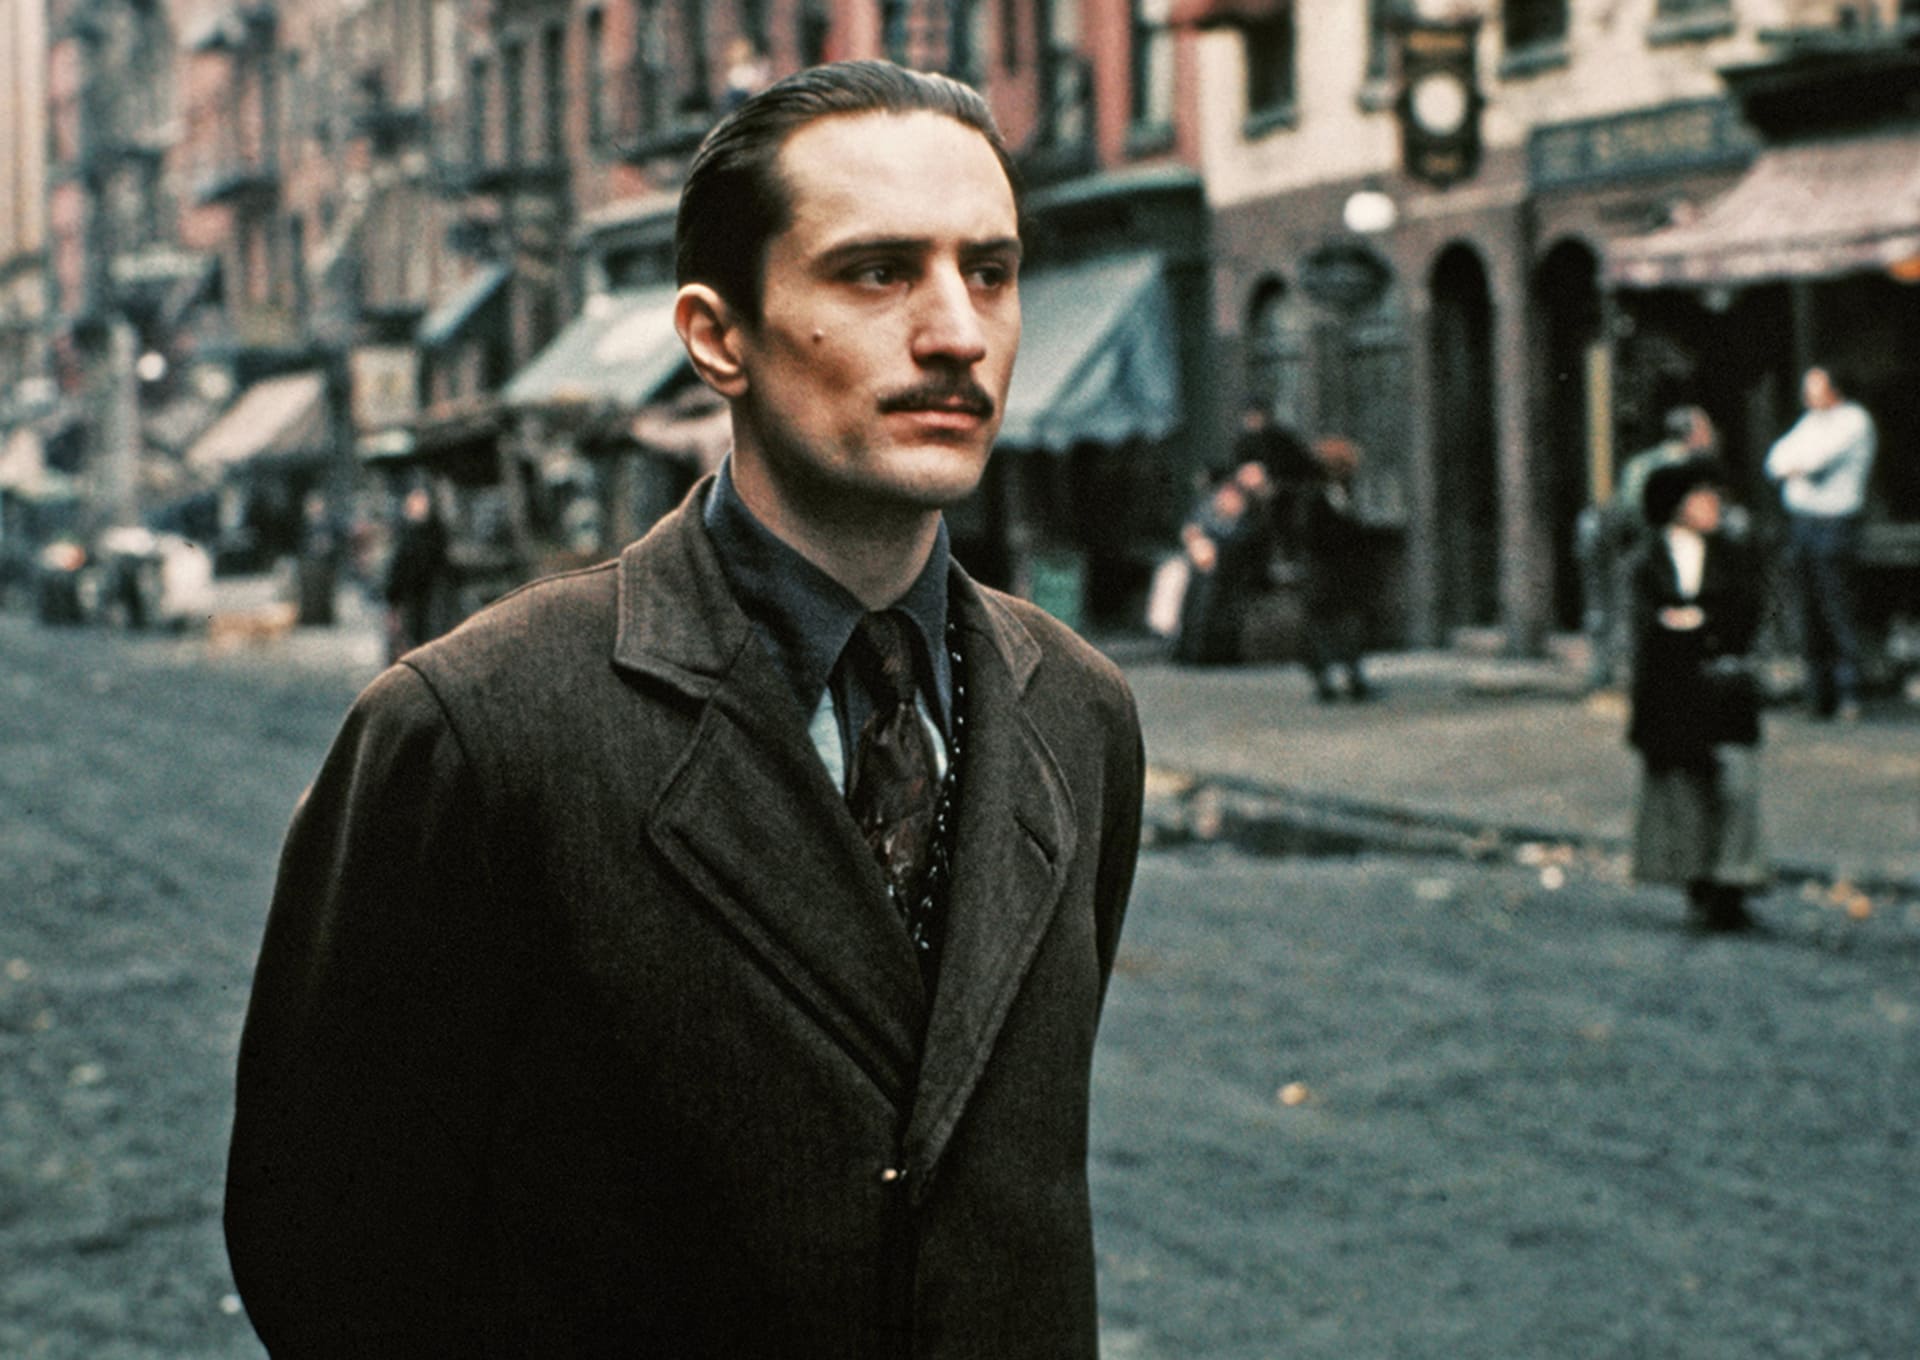 Asi nejznámějším Coppolovým počinem je brilantní třídílná mafiánská sága Kmotr, kde se jedné z hlavních rolí ujal také Coppolův oblíbenec Robert De Niro.